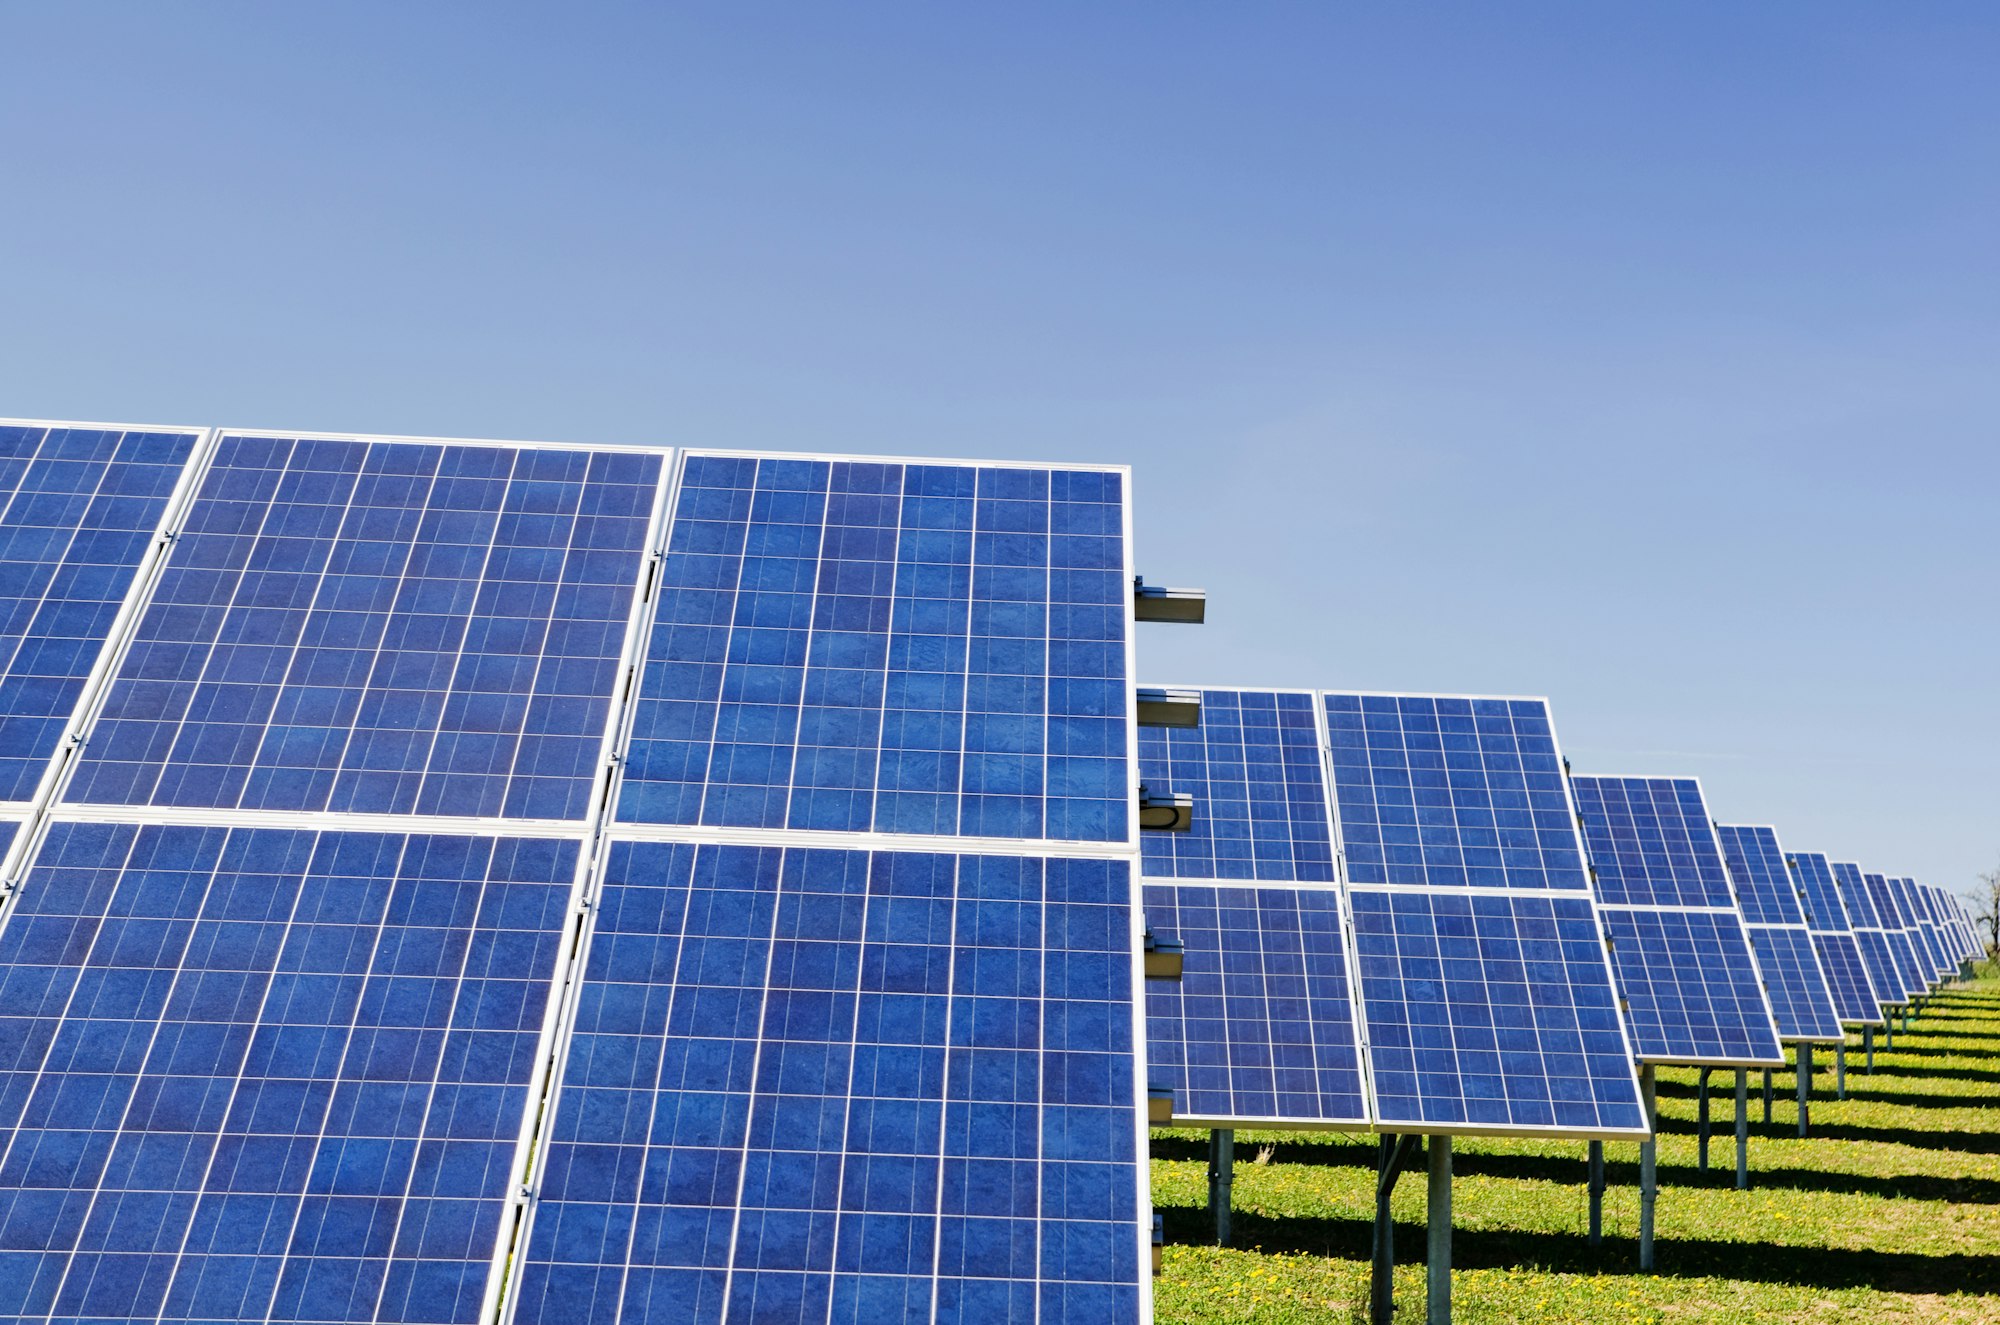 DRC-based cleantech Nuru raises $1.5M to build solar-hybrid grids